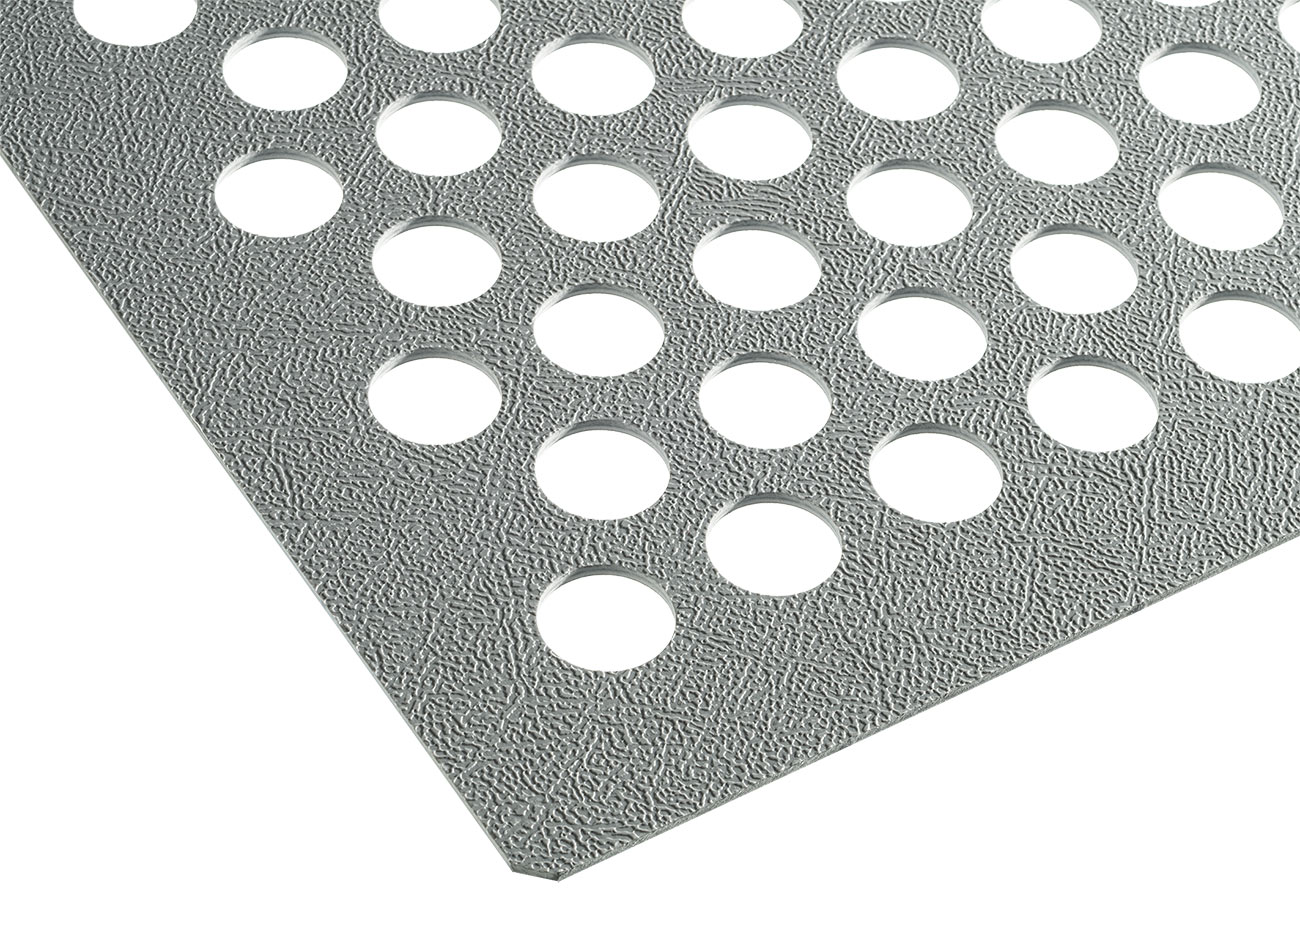 PP verstärkt (Talkum gefüllt) <br>- Oberfläche einseitig genarbt <br>- Farbe: grau <br>- Materialdicken: 3 bis 8 mm